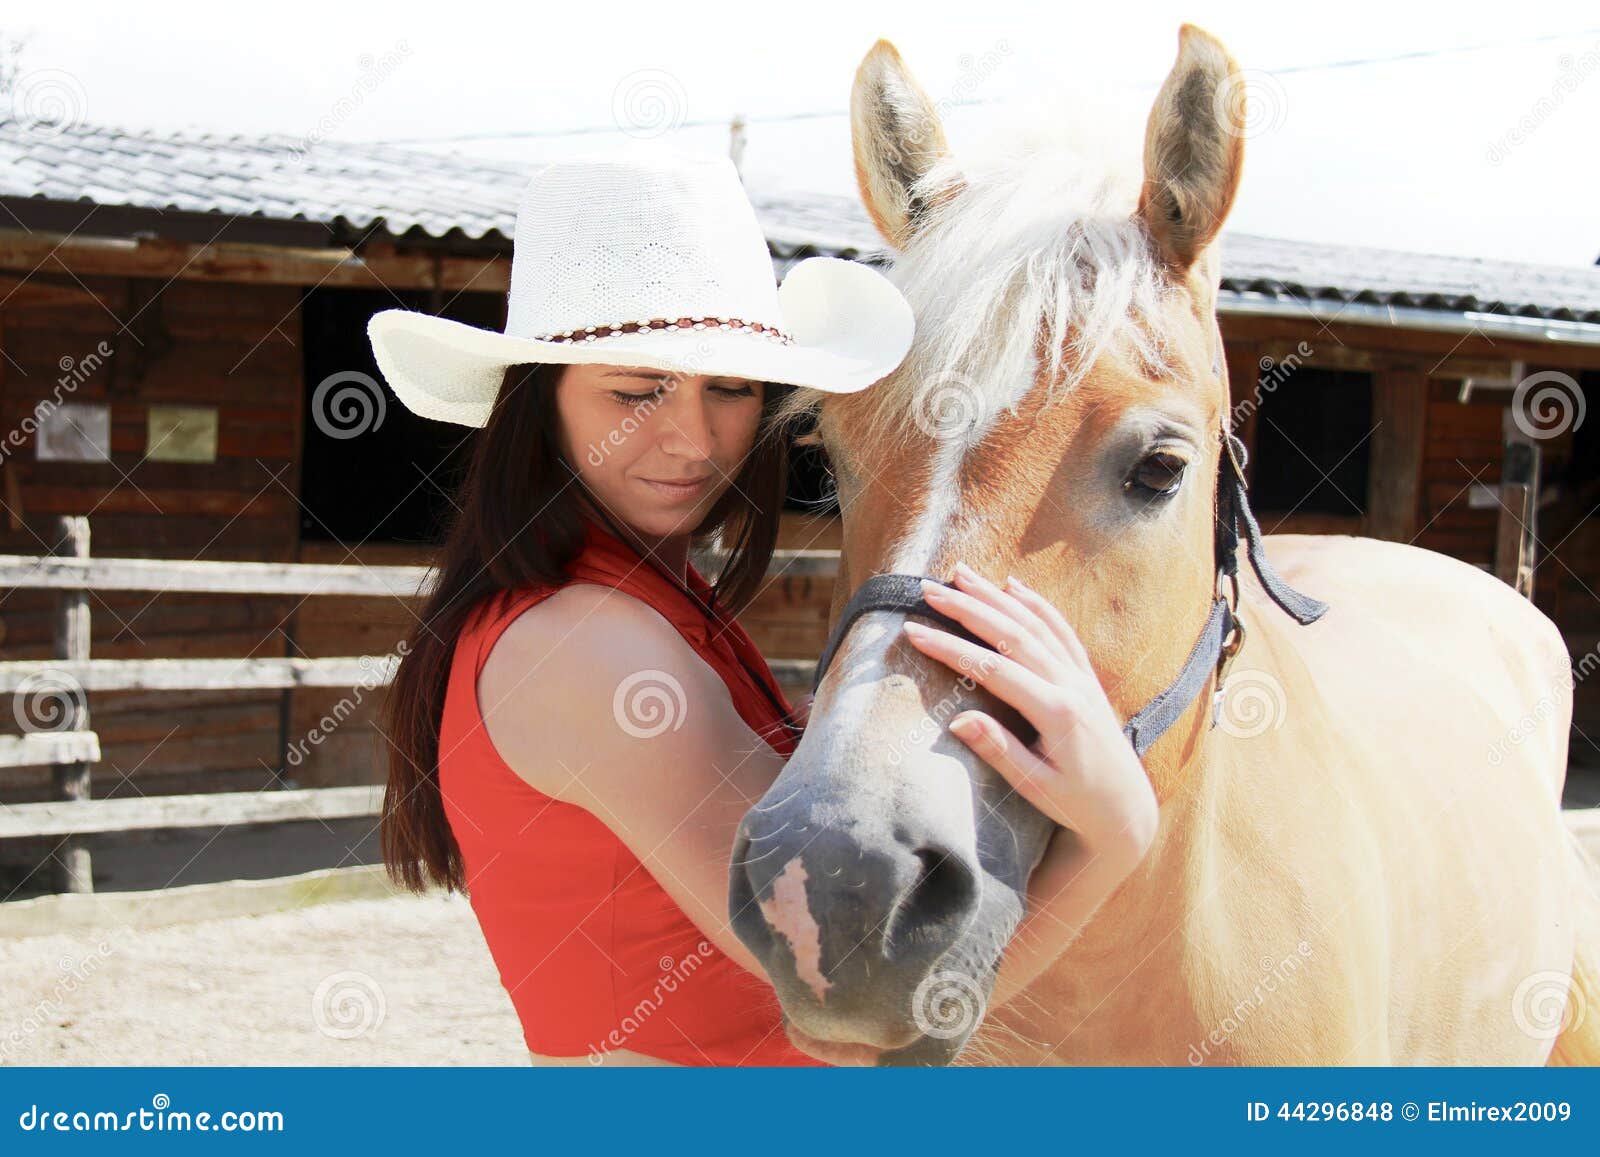 Νέα γυναίκα που φροντίζει το άλογό της. Φωτογραφία της νέας γυναίκας που φροντίζει το άλογό της